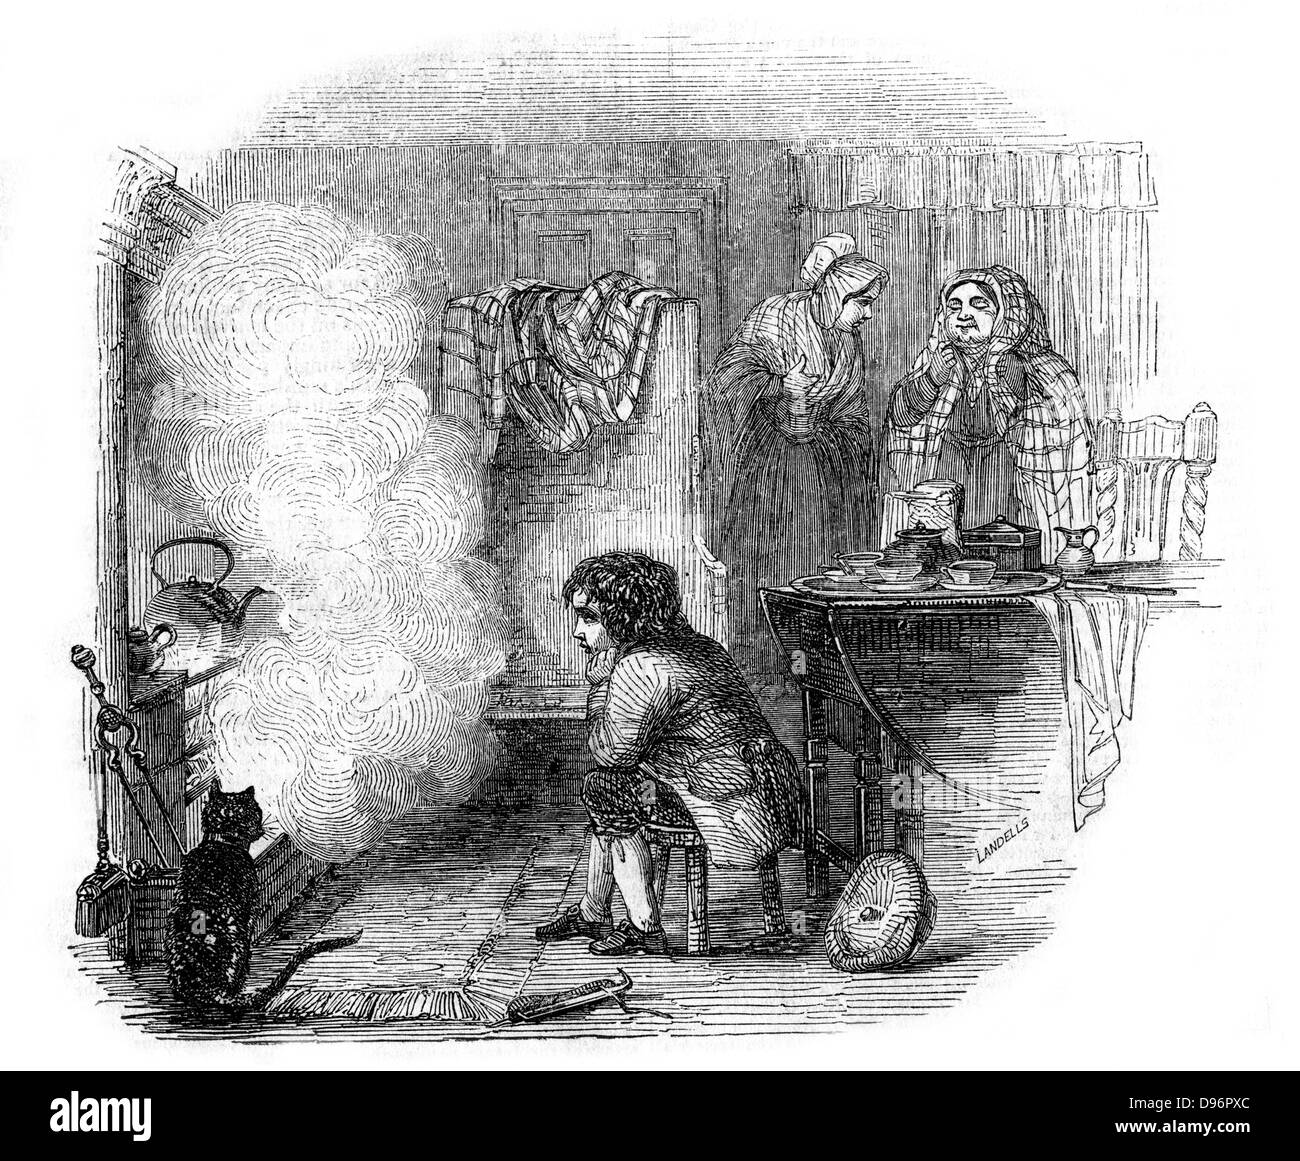 Die Geschichte eines Kaffee - Wasserkocher'. James Watt als Junge beobachten den Wasserkocher kochen im Feuer. Watt (1736-1819) machte große Verbesserungen in der Dampfmaschine, einer der bedeutendsten in der separaten Kondensator. 1774 ging er in Partnerschaft mit Matthew Boulton (1728-1809) der Birmingham Hersteller und Unternehmer. Illustration von Ebenezer Landells (1808-1860) Englische Zeichner und Stecher, von 'beleuchtete Magazin'. (London, 1844). Holzstich. Stockfoto